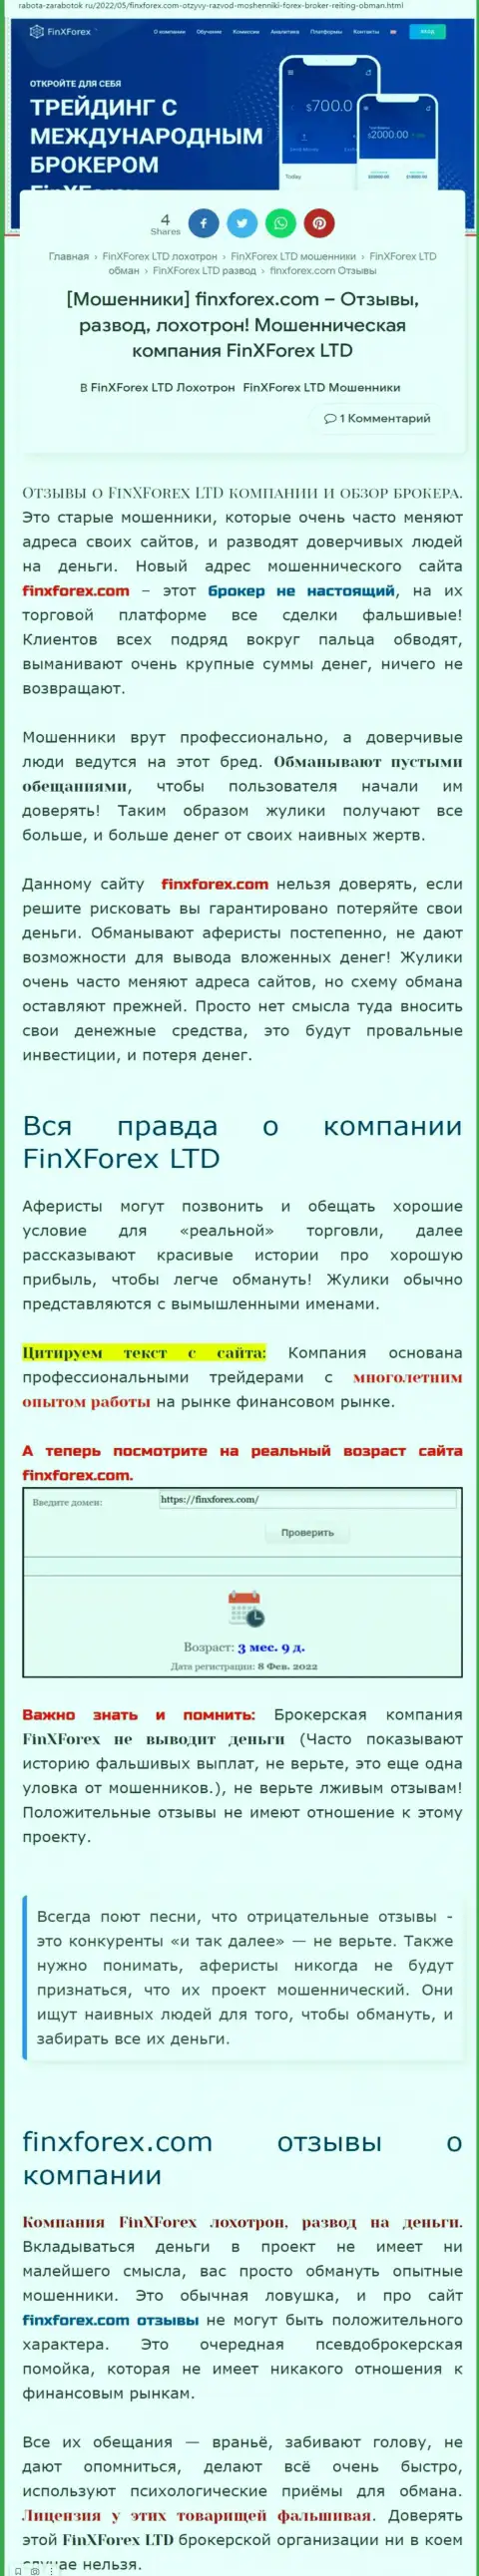 Автор обзорной статьи о ФинХФорекс ЛТД заявляет, что в FinXForex Com мошенничают